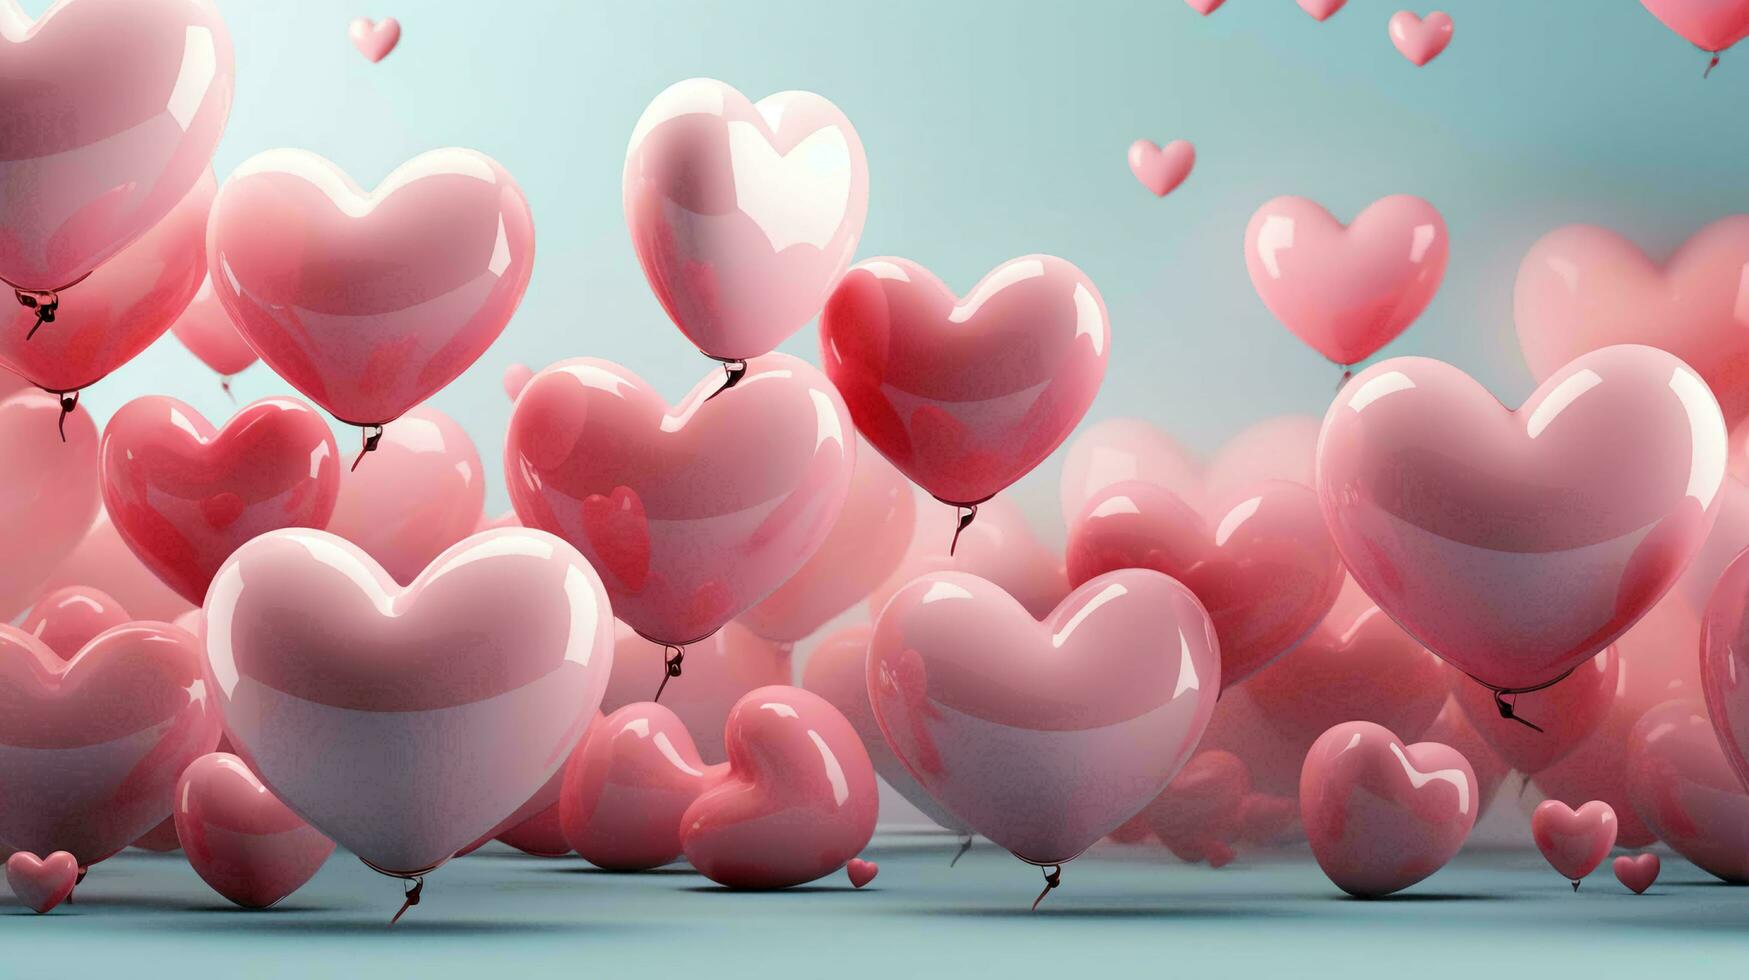 hermosa amor antecedentes de inflable corazones de en forma de corazon globos para el fiesta de todas amantes, San Valentín día foto